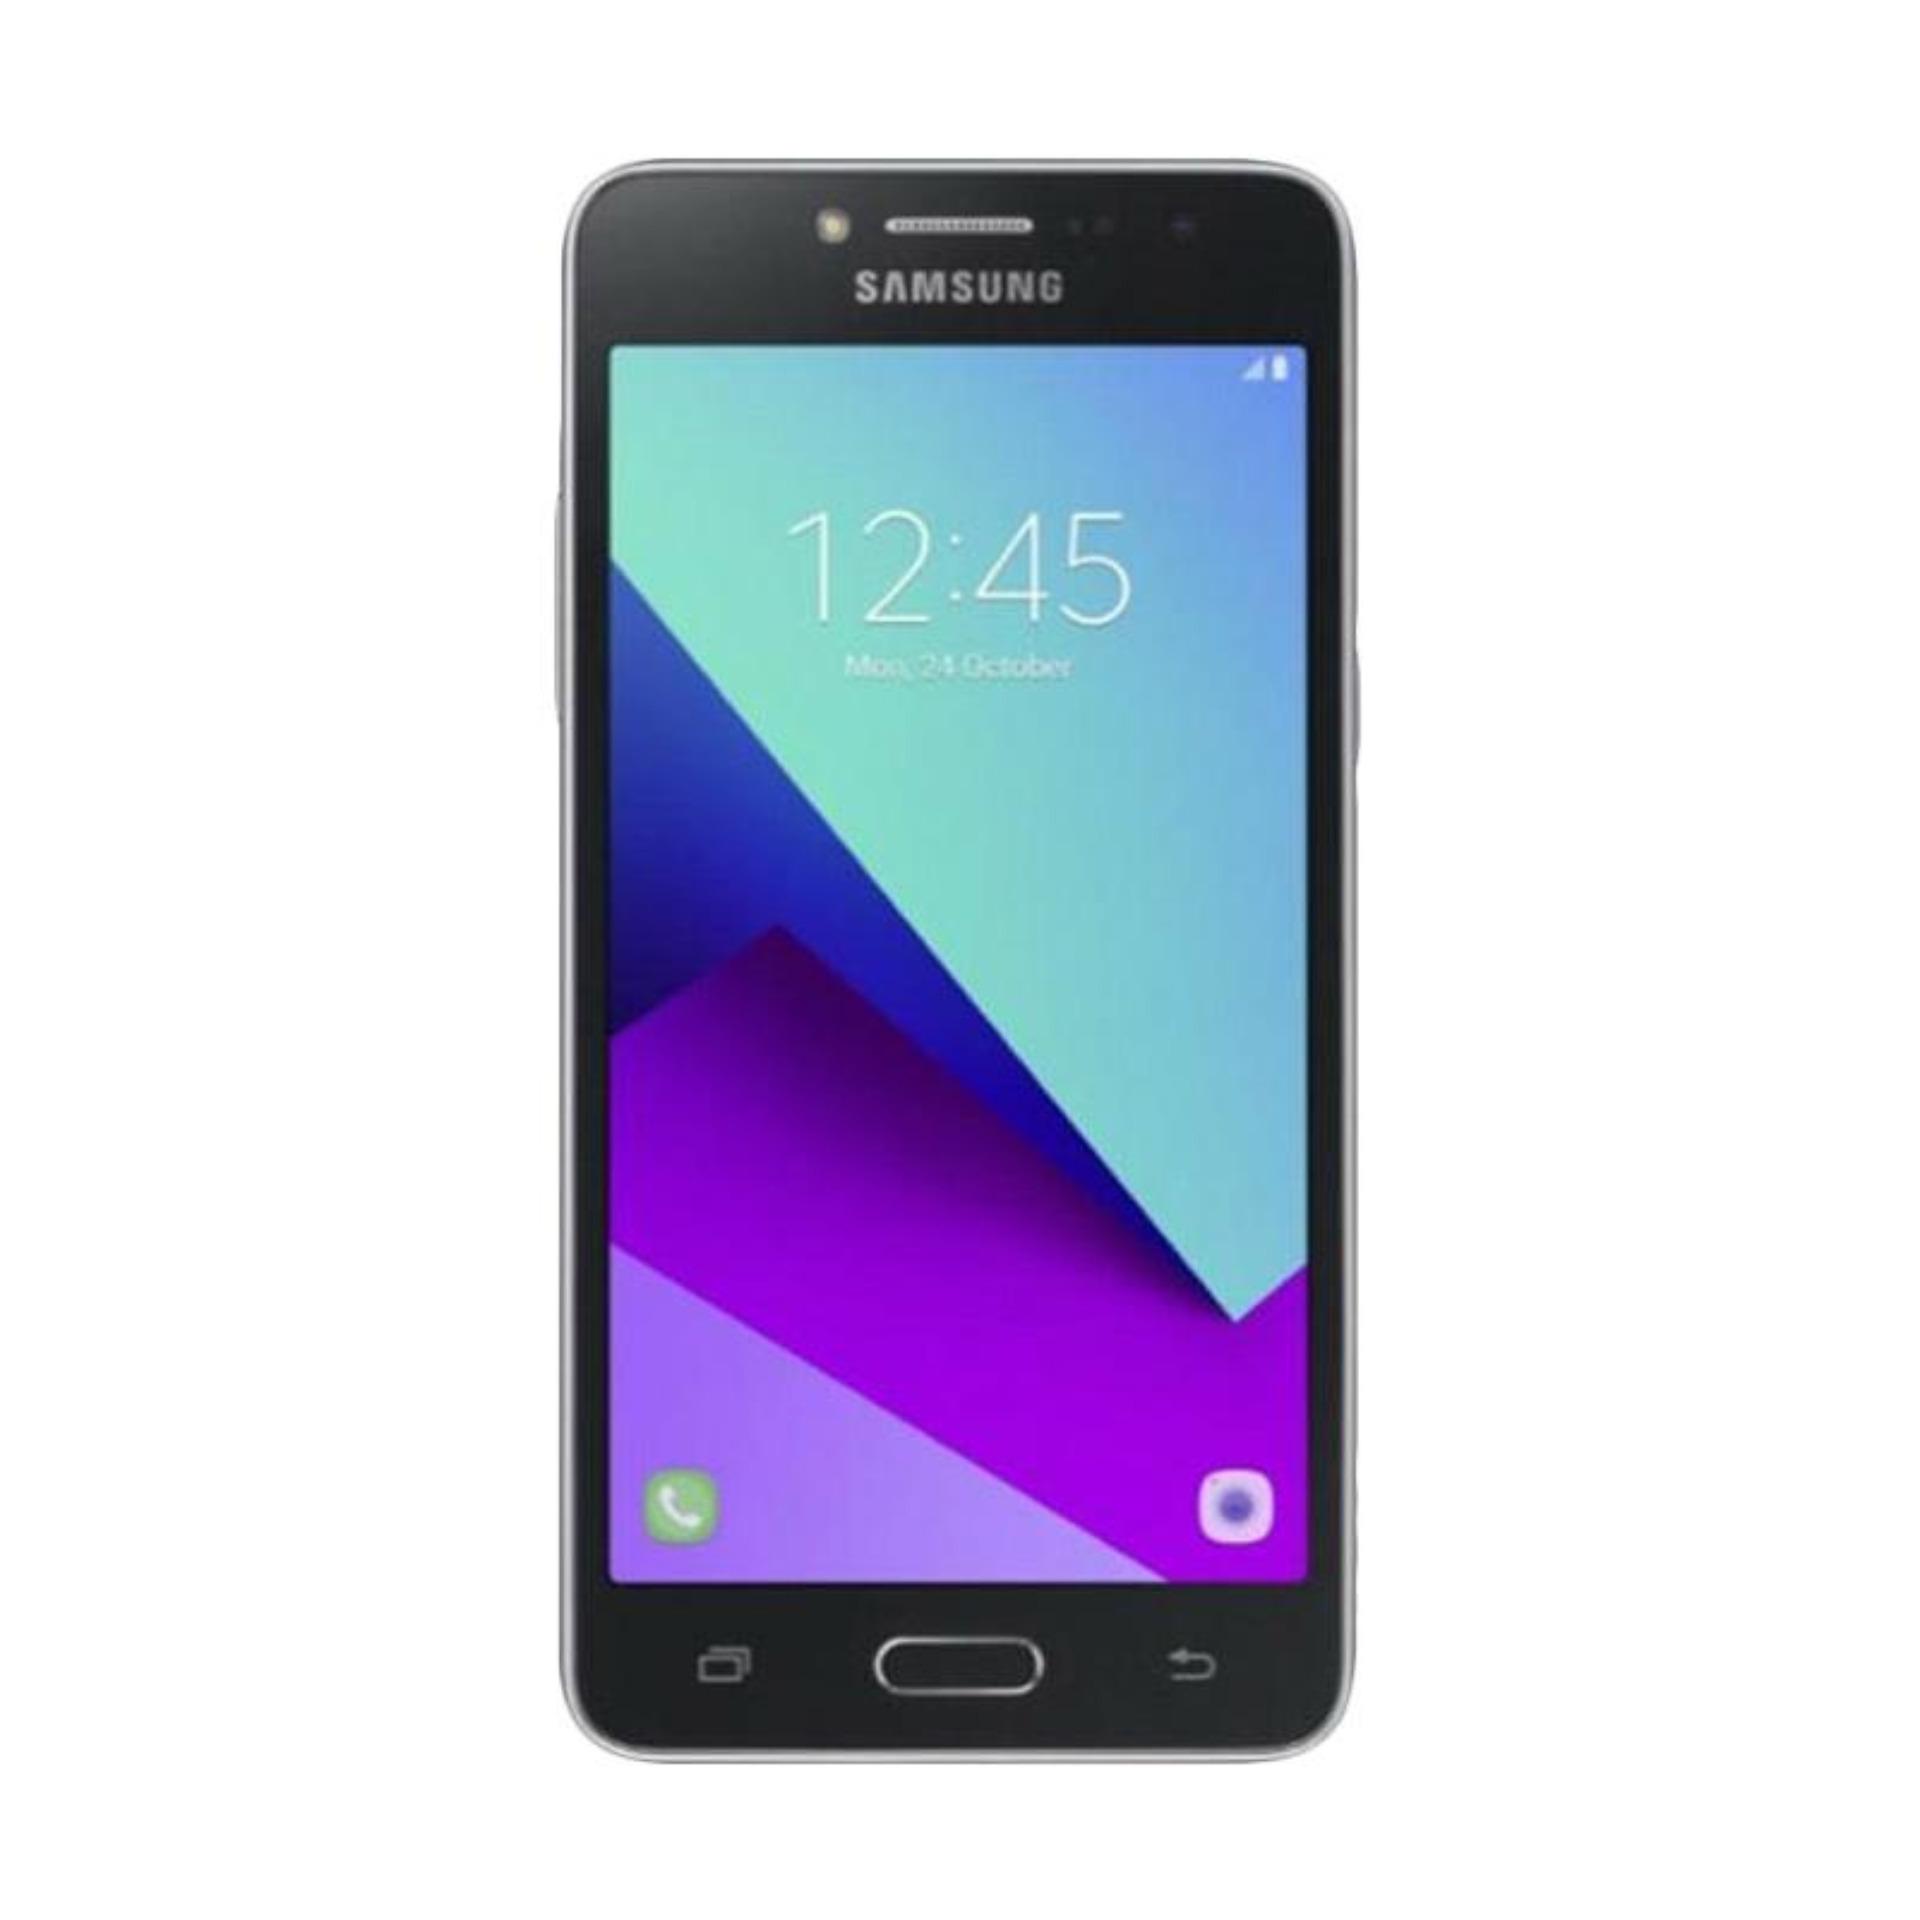  Samsung J2 Prime Smartphone - Hitam [8 GB/1.5 GB]